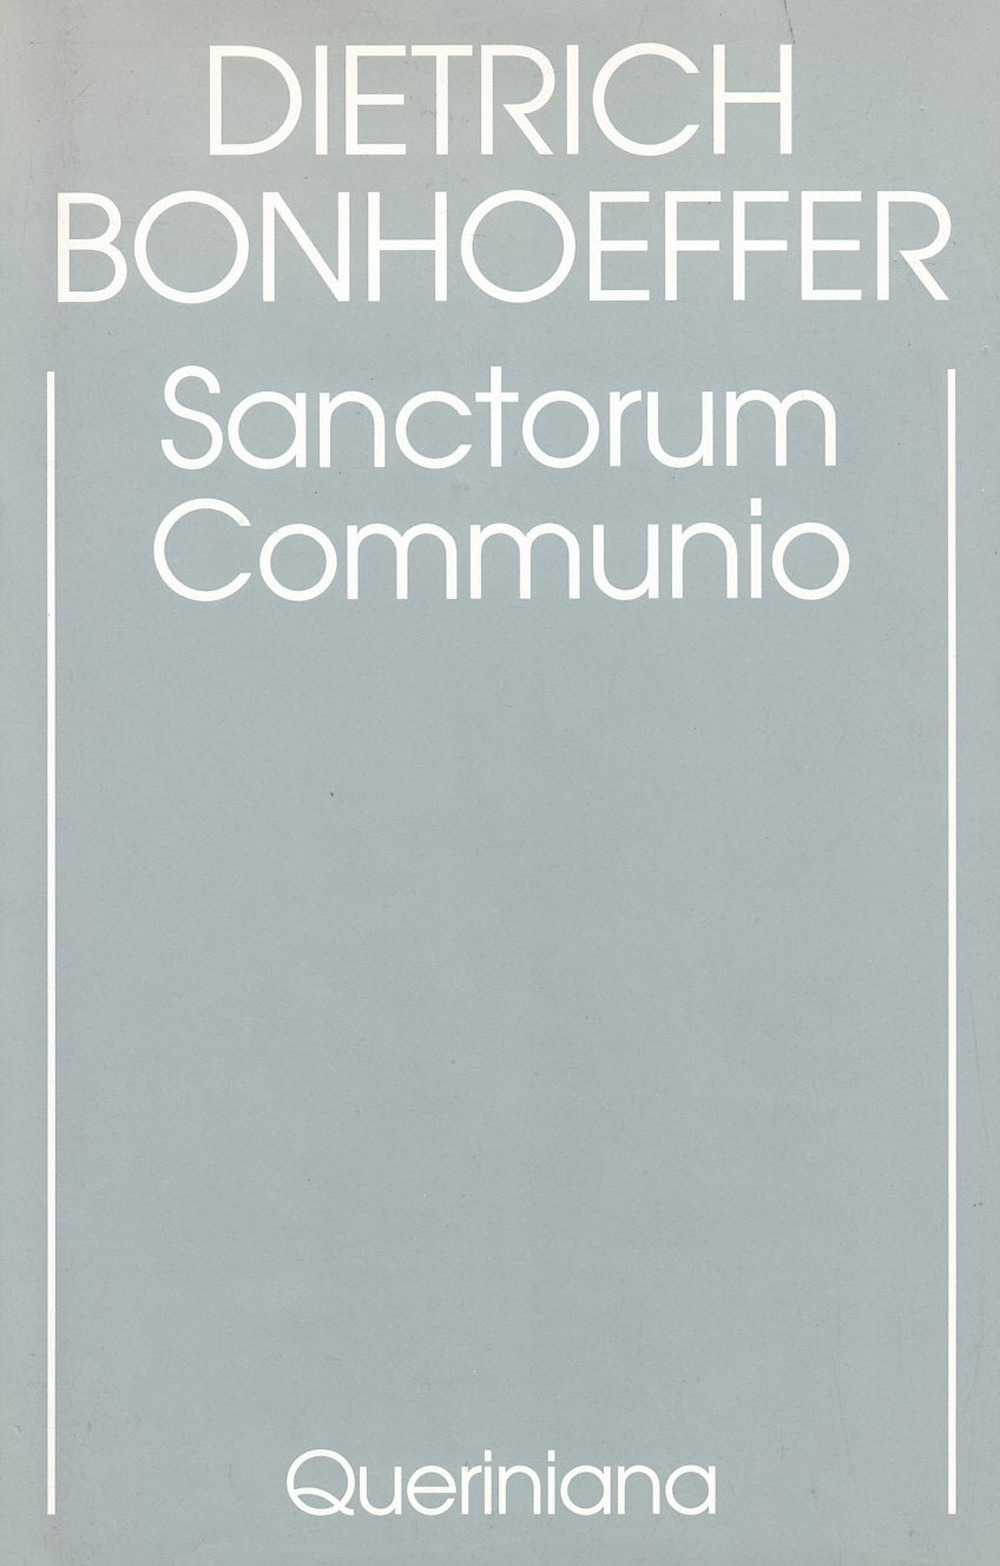 Edizione critica delle opere di D. Bonhoeffer. Ediz. critica. Vol. 1: Sanctorum communio. Una ricerca dogmatica sulla sociologia della Chiesa